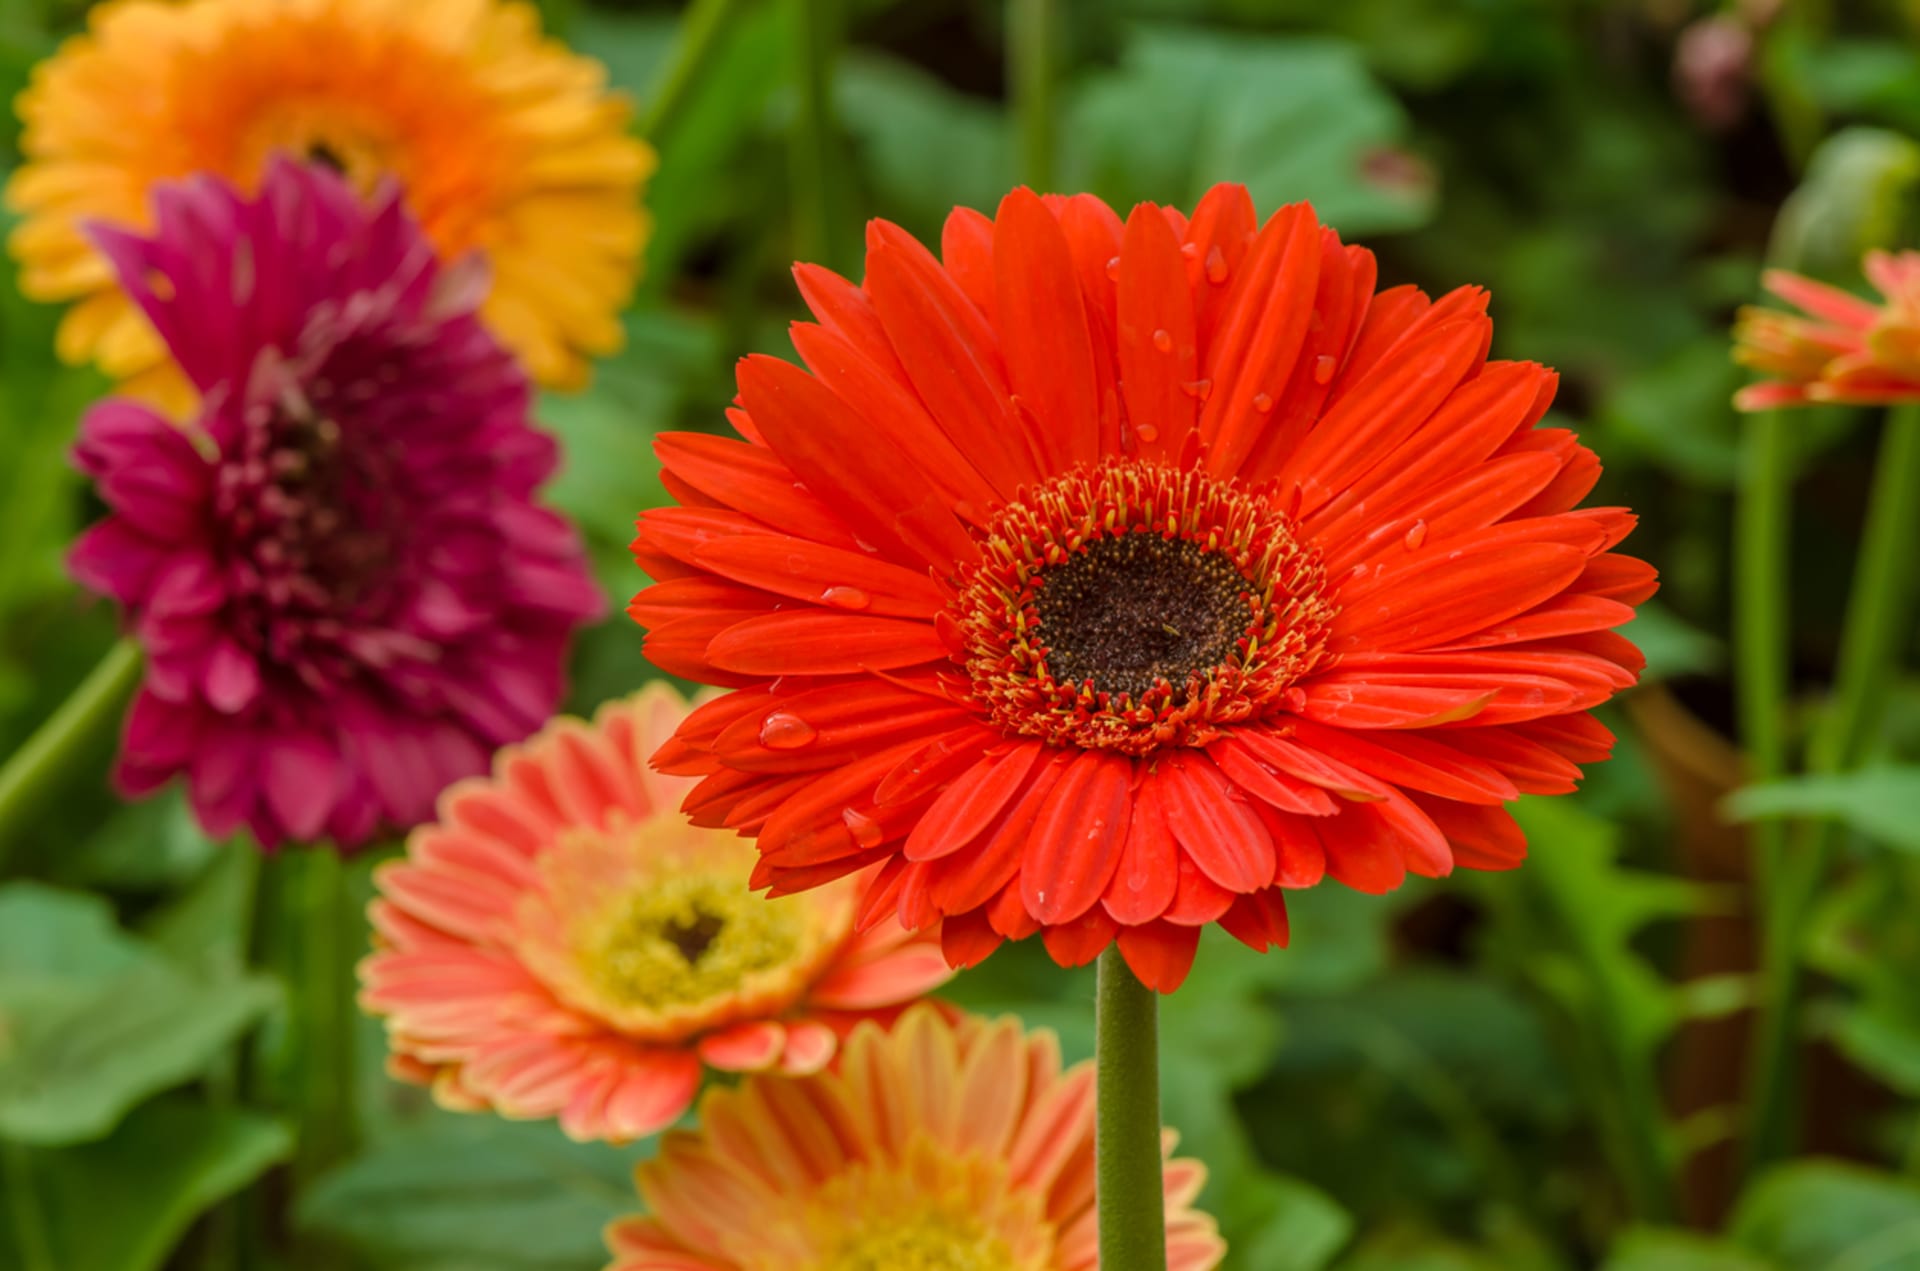 Gerbera patří mezi nejoblíbenější řezané květiny nejen díky pestré paletě barev, ale také dlouhé životnosti ve váze, vydrží až dva týdny. Květy se často dávají do kytic, květní stonek bývá vyztužen drátem.